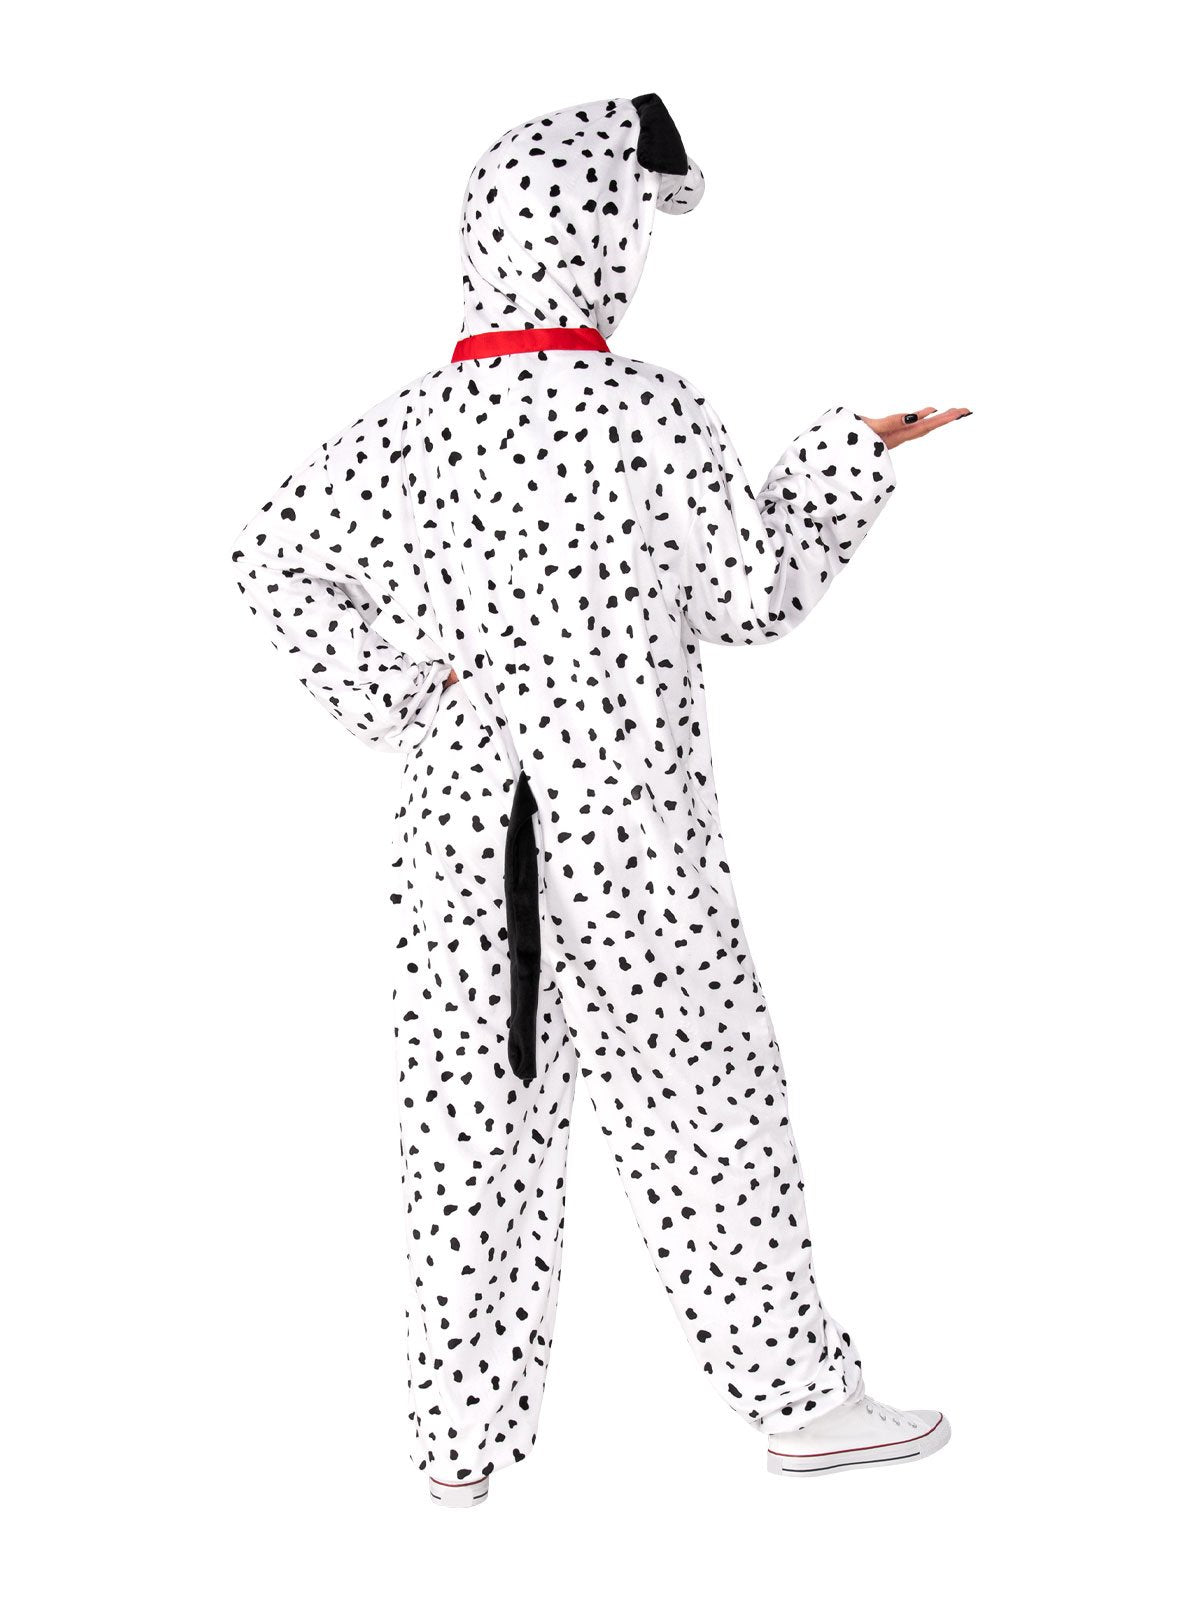 Costume Adult Dalmatian Dog Onies Medium